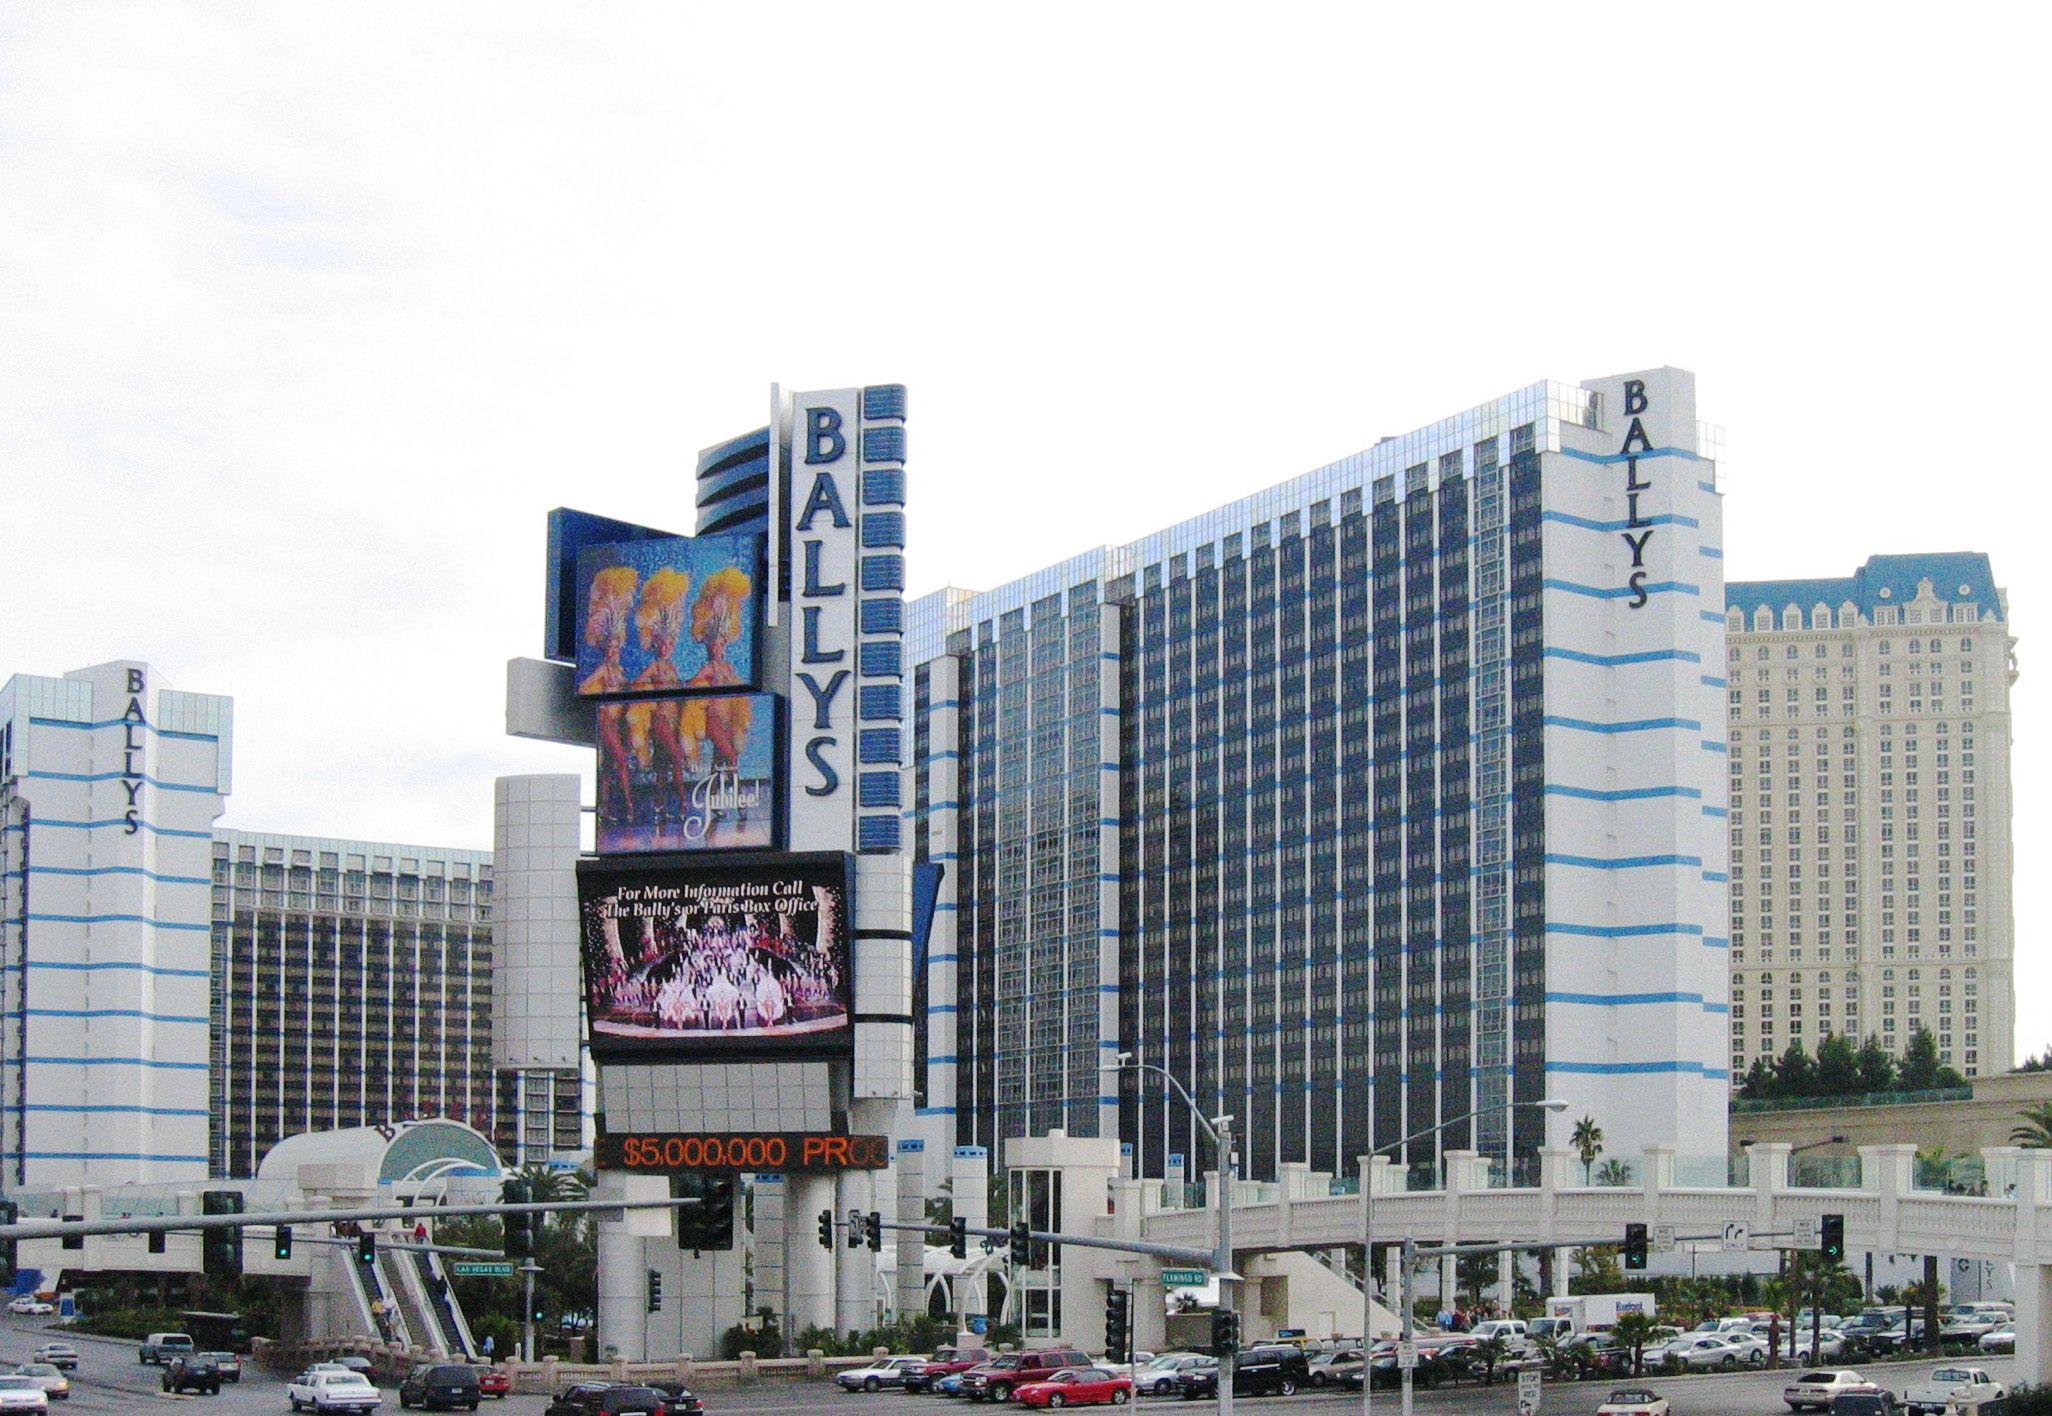 Bally's Hotel Logo - Bally's Las Vegas